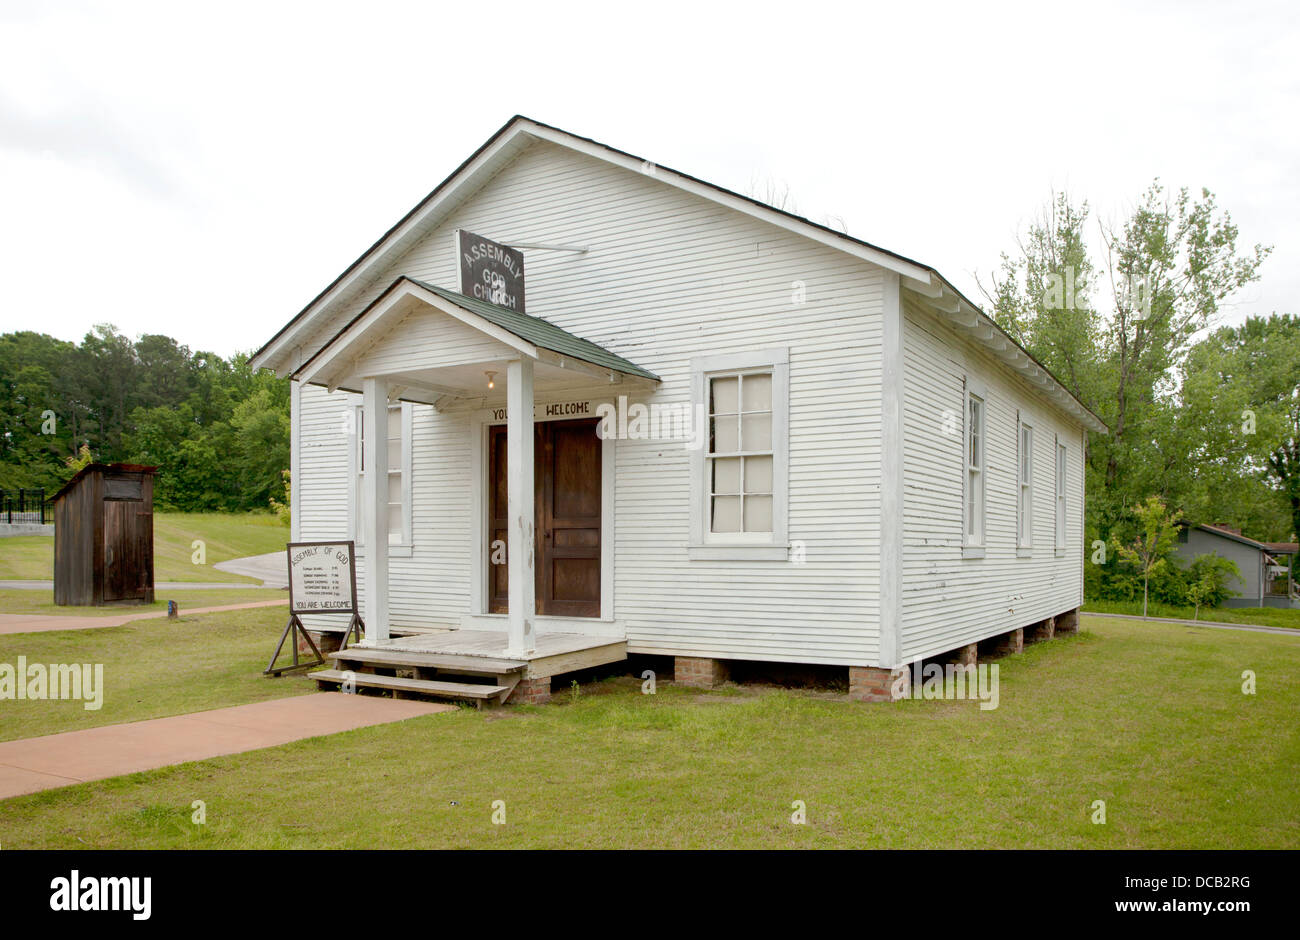 L'église où Elvis Presley a chanté d'abord à côté de sa maison natale à Tupelo Mississippi USA Banque D'Images